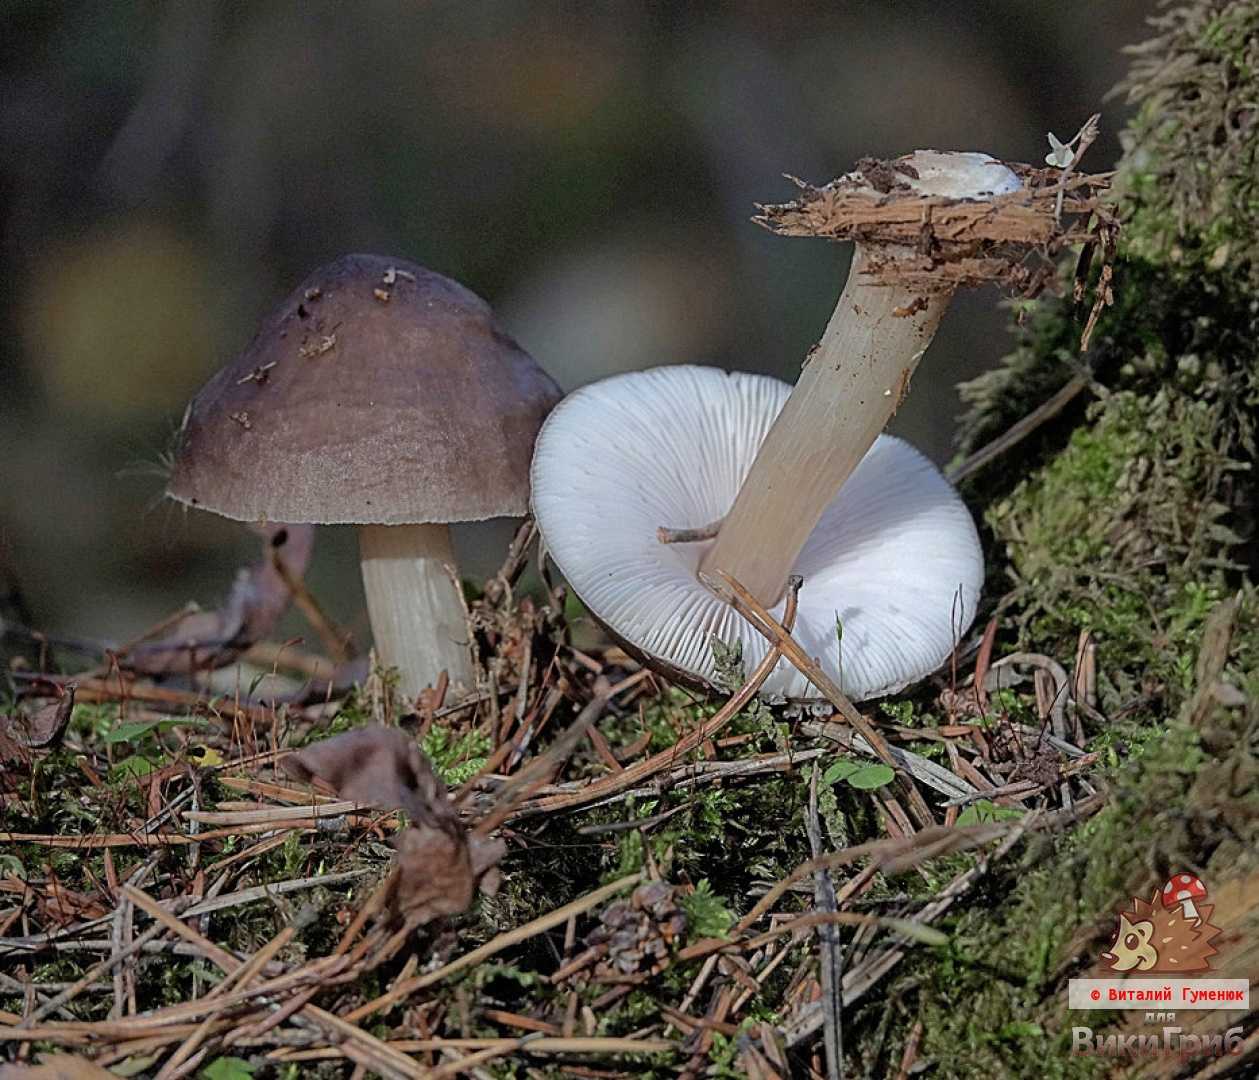 Шампиньон полевой 🍄 (14 видов съедобных грибов)